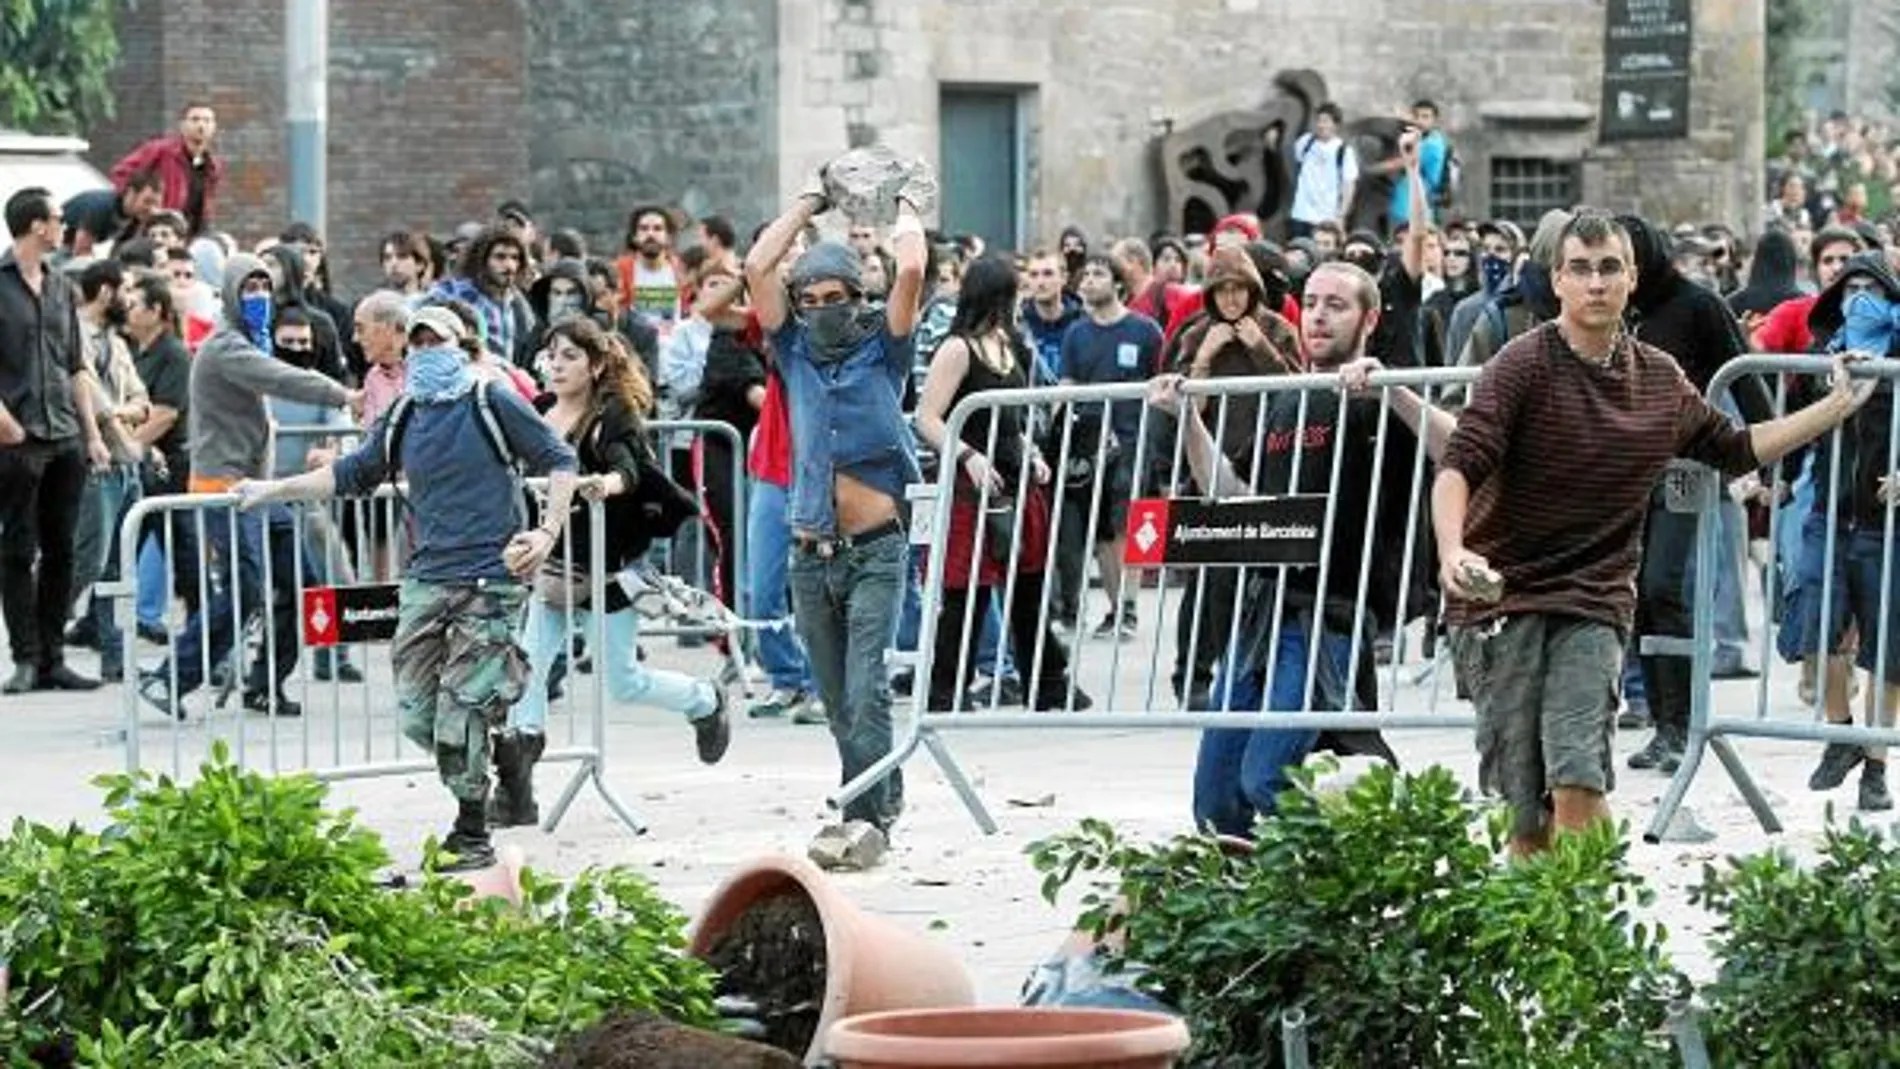 Los radicales destrozan Barcelona en una violenta jornada de huelga